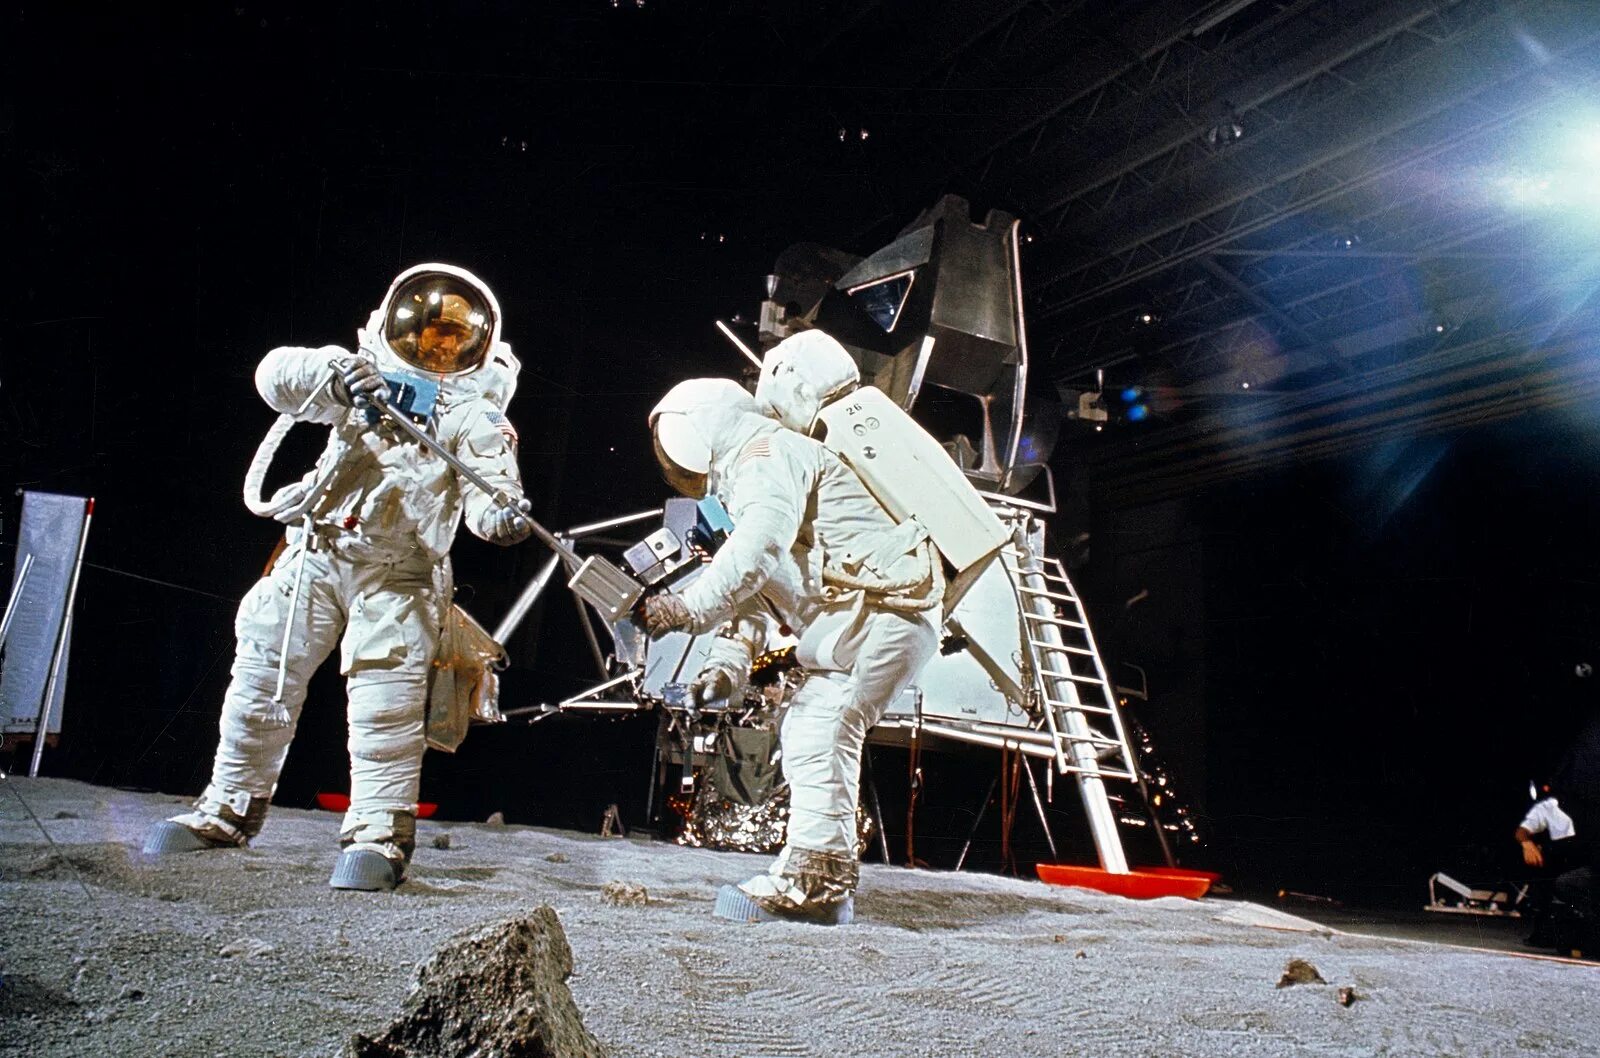 Аполлон 1969. Аполлон 11 1969. First moon landing